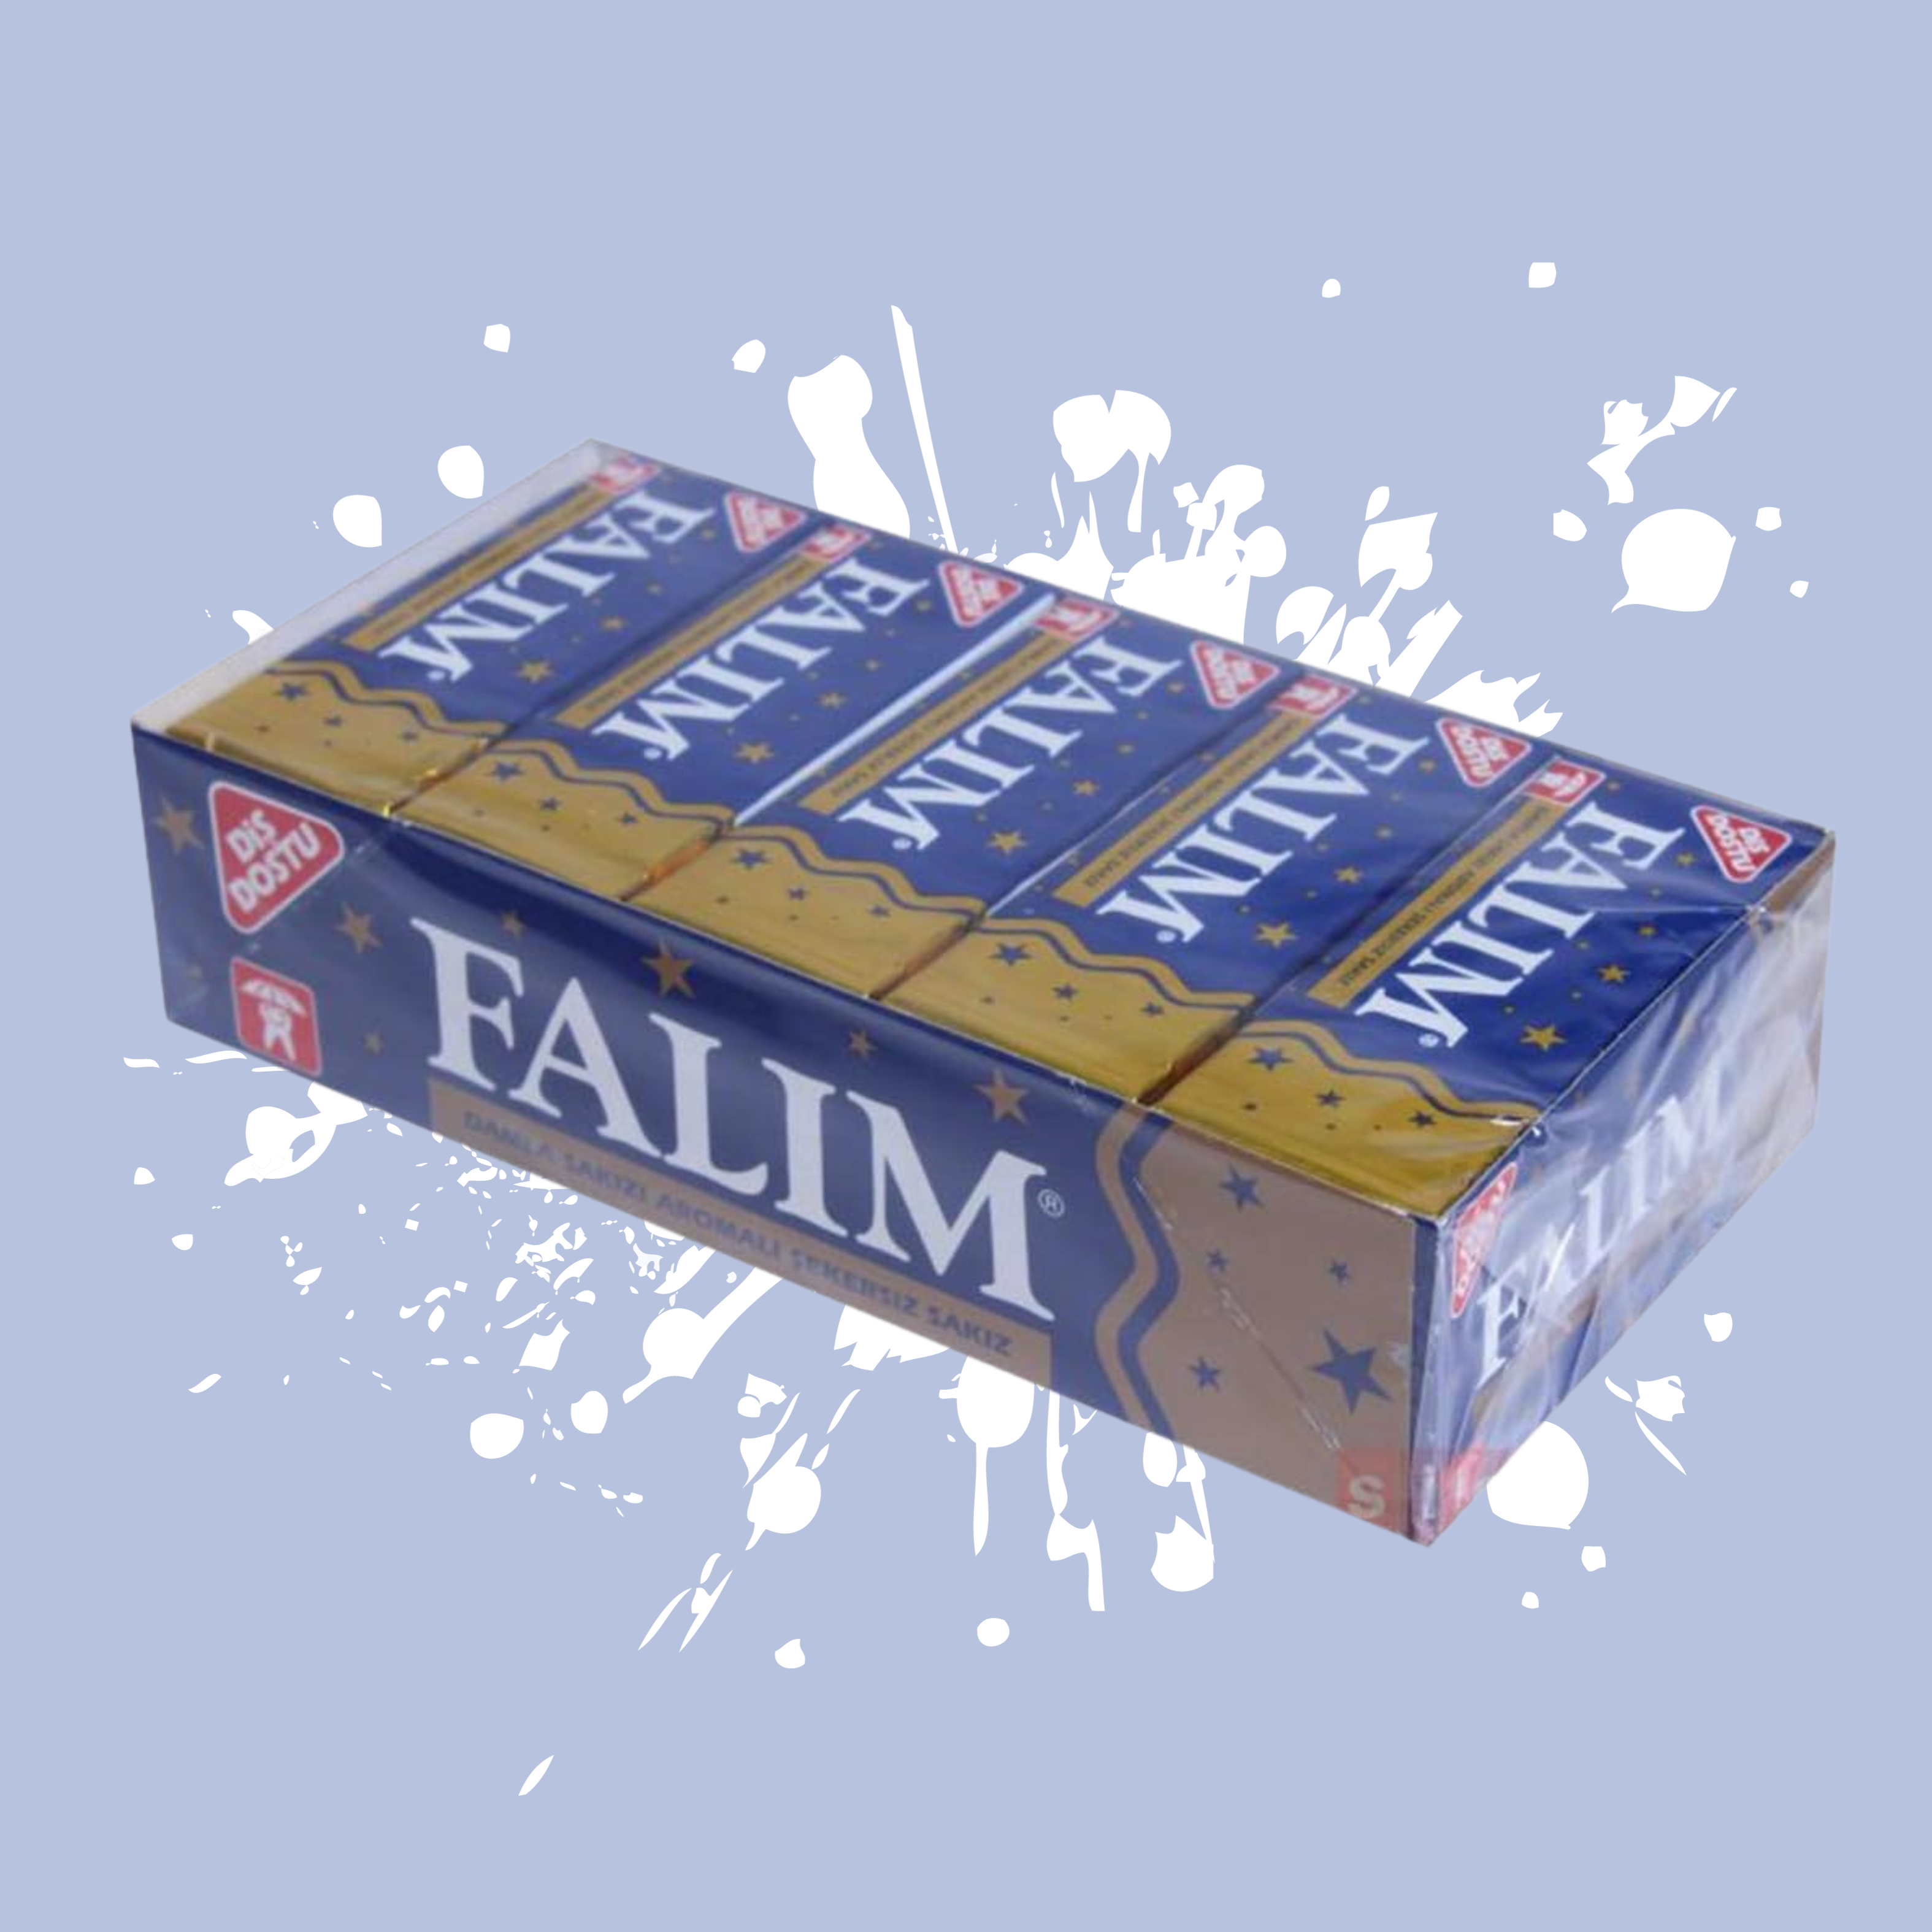 Falim Gum – Sigmafit